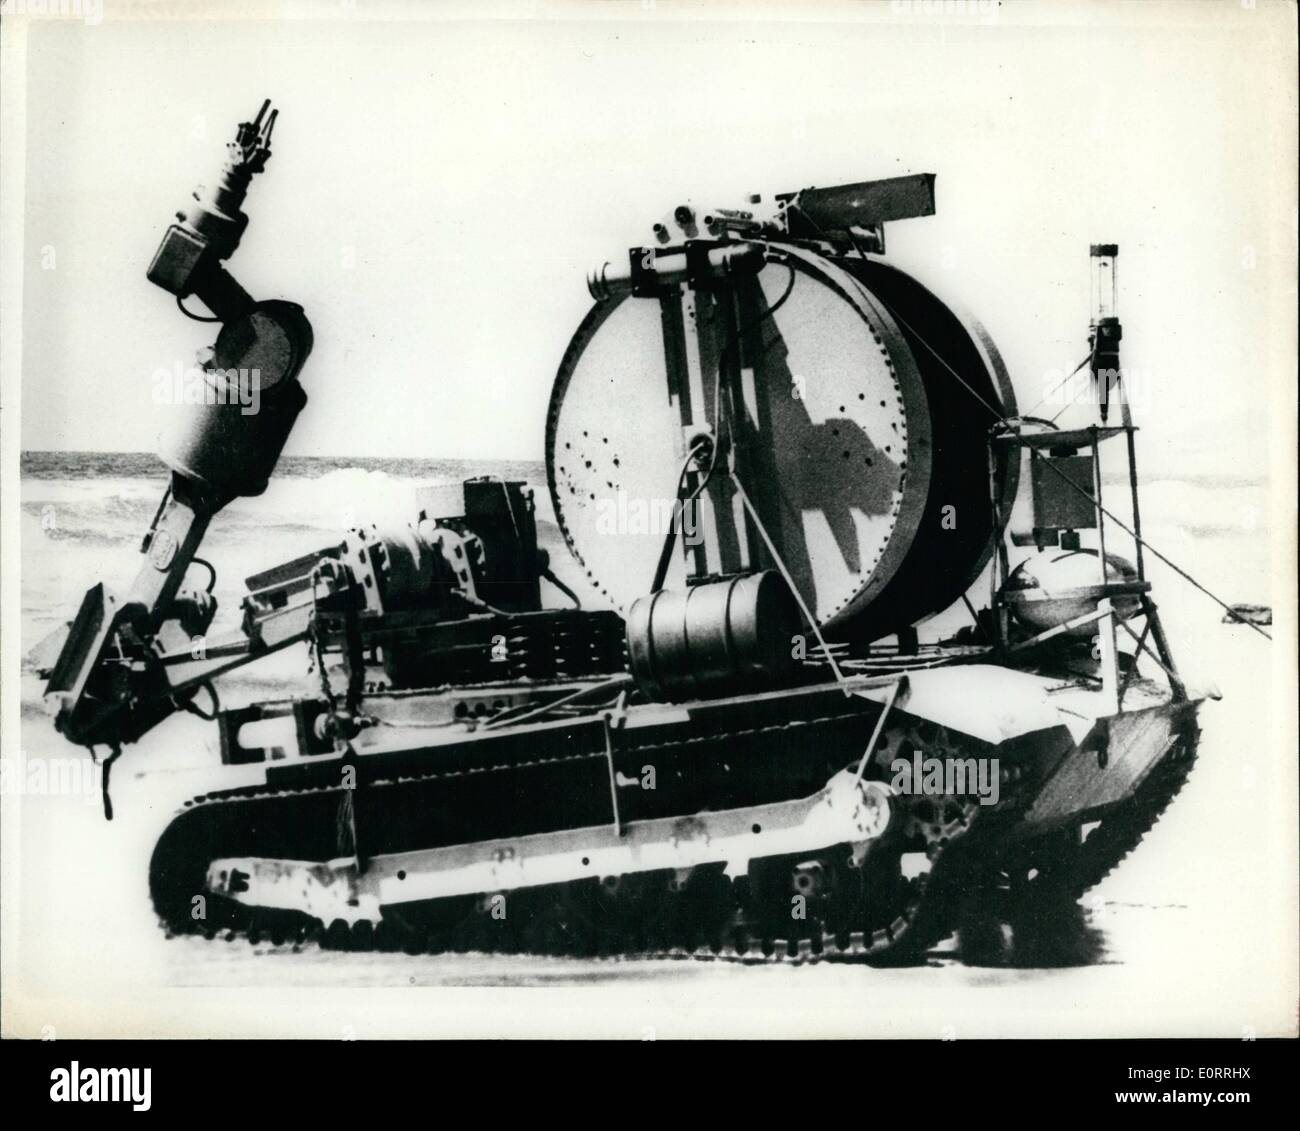 Mai 05, 1960 - U.S. Navy révèle nouvelle télécommande véhicule pour explorer le fond de l'océan. : Une télécommande unique véhicule sous-marin pour explorer et mener des études scientifiques de fond de l'océan pendant de longues périodes à de grandes profondeurs a été élaboré pour le Bureau de la recherche navale. Le nouveau véhicule a été démontré pour la presse de la rive de La Jolla, Californie, le 16 mai. 1960. Le véhicule est essentiellement un réservoir équipé d'un bras manipulateur de transmission long et part avec caméras de télévision sous-marine spécialement conçus qui servent comme les yeux de l'opérateur du véhicule sur la rive Banque D'Images